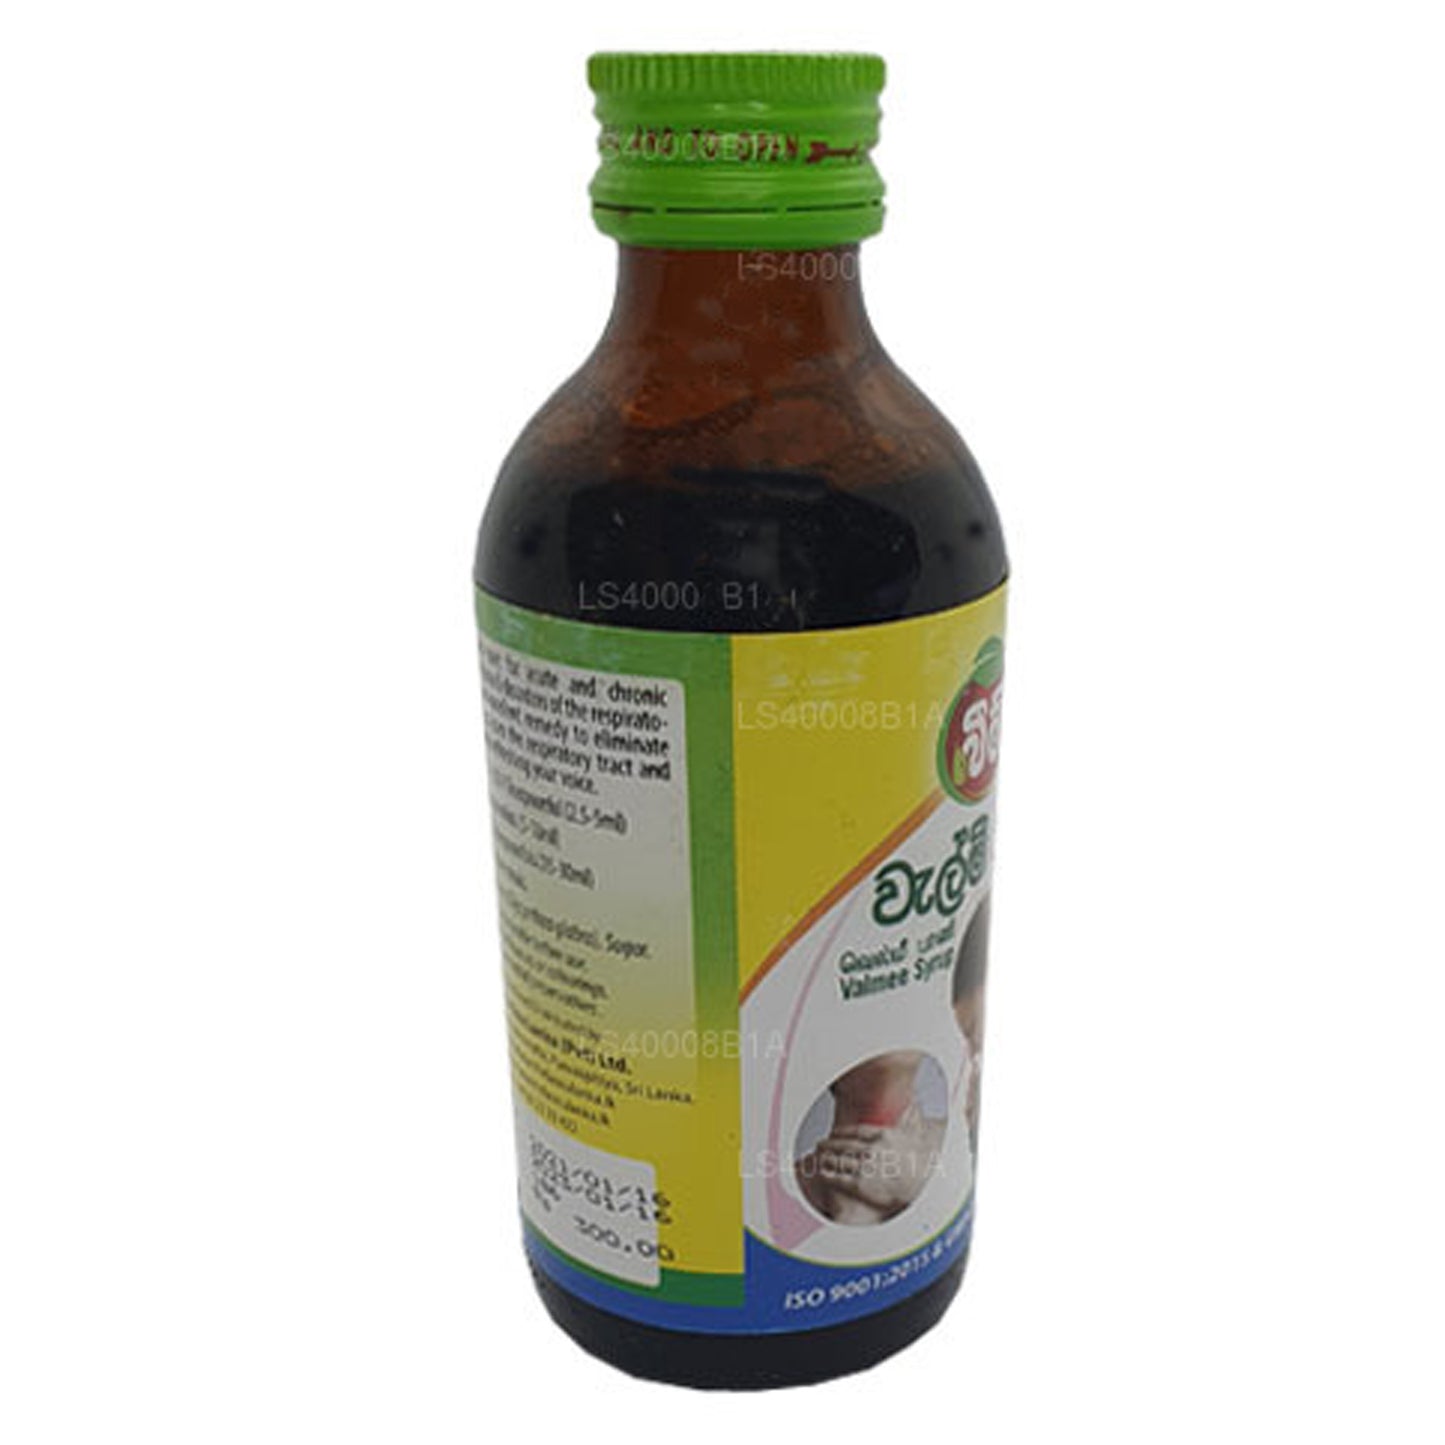 Beam Velmee Sirap (Athimadura sirap) (180 ml)